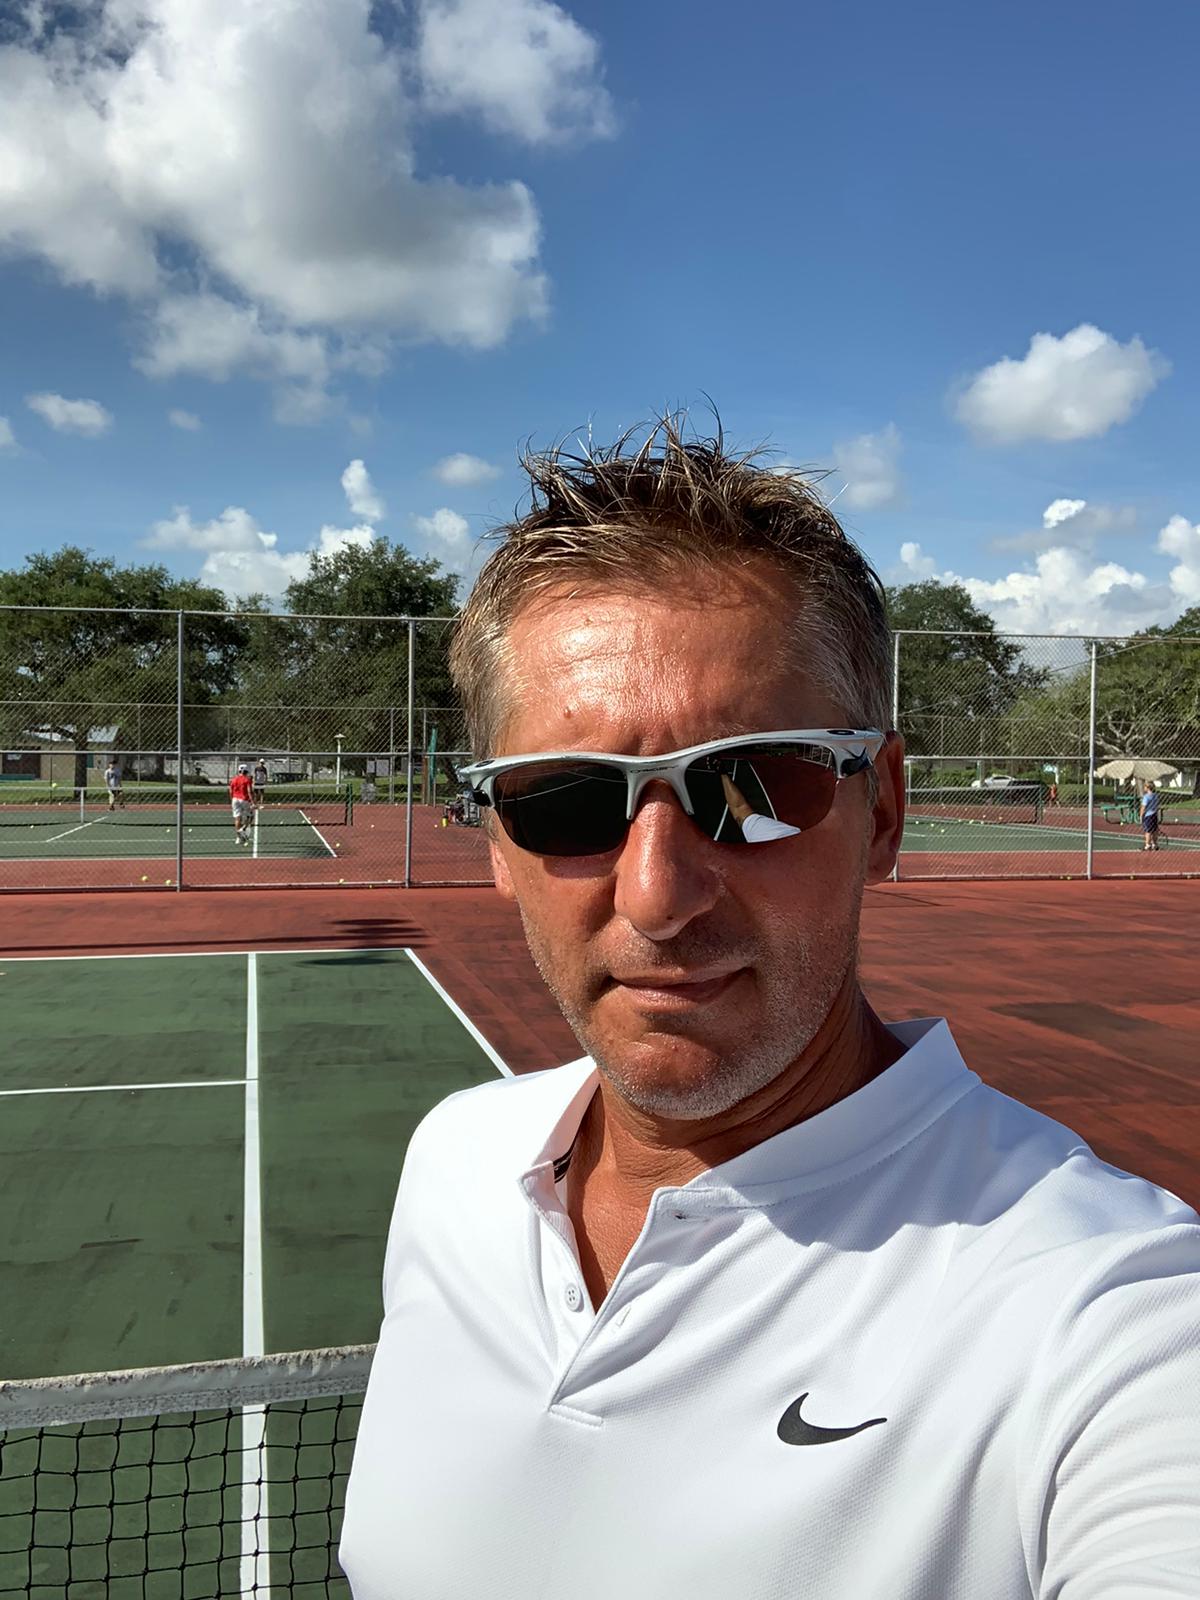 Boris B. teaches tennis lessons in Aventura, FL